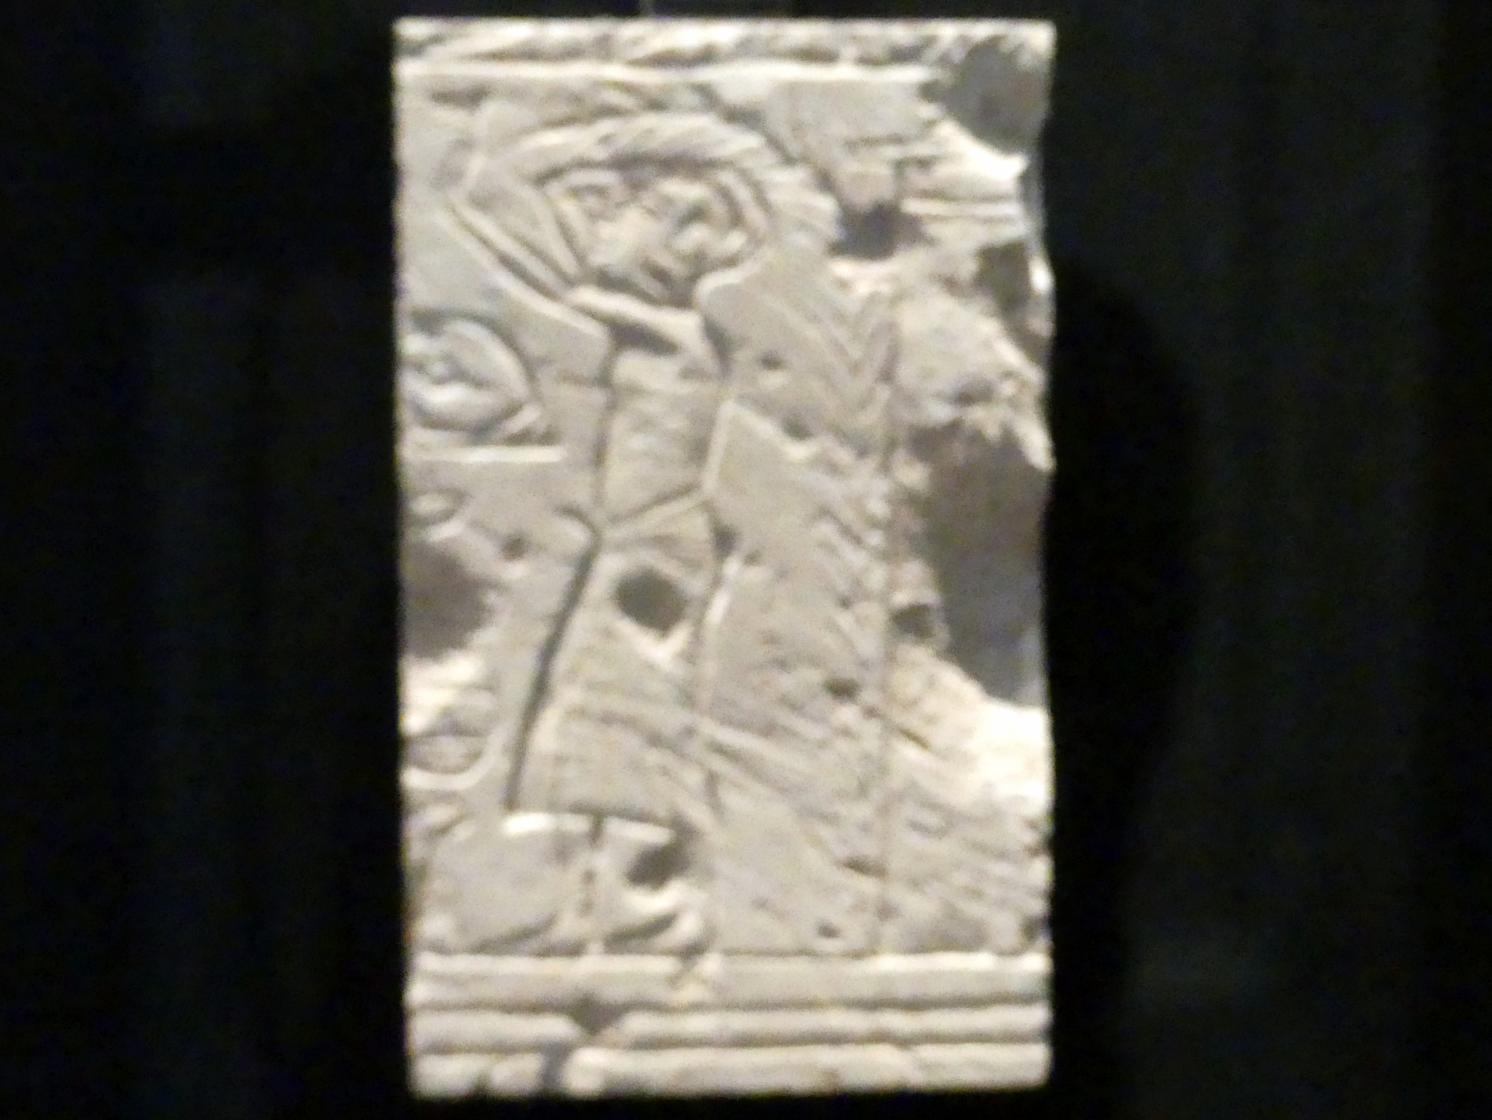 Grabrelief mit Trauernden, 18. Dynastie, Undatiert, 1330 v. Chr., Bild 1/2